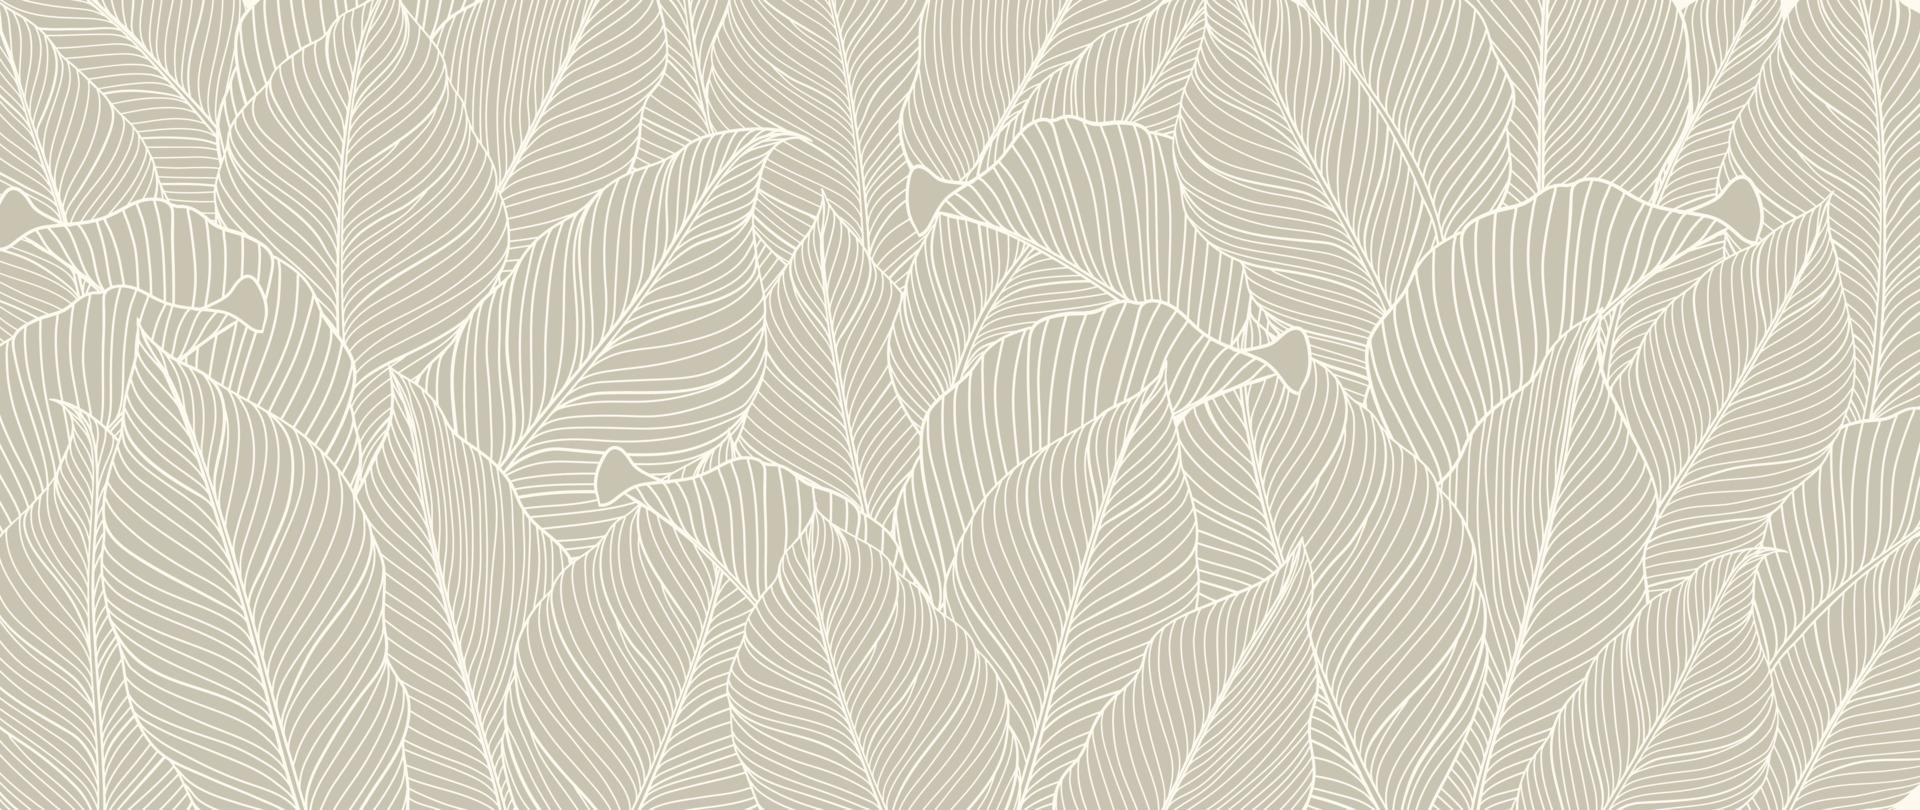 Ilustración de vector de fondo de arte de línea de follaje botánico. hojas de palma tropical fondo de patrón de contorno de dibujo blanco. diseño para papel pintado, decoración del hogar, embalaje, impresión, afiche, portada, pancarta.